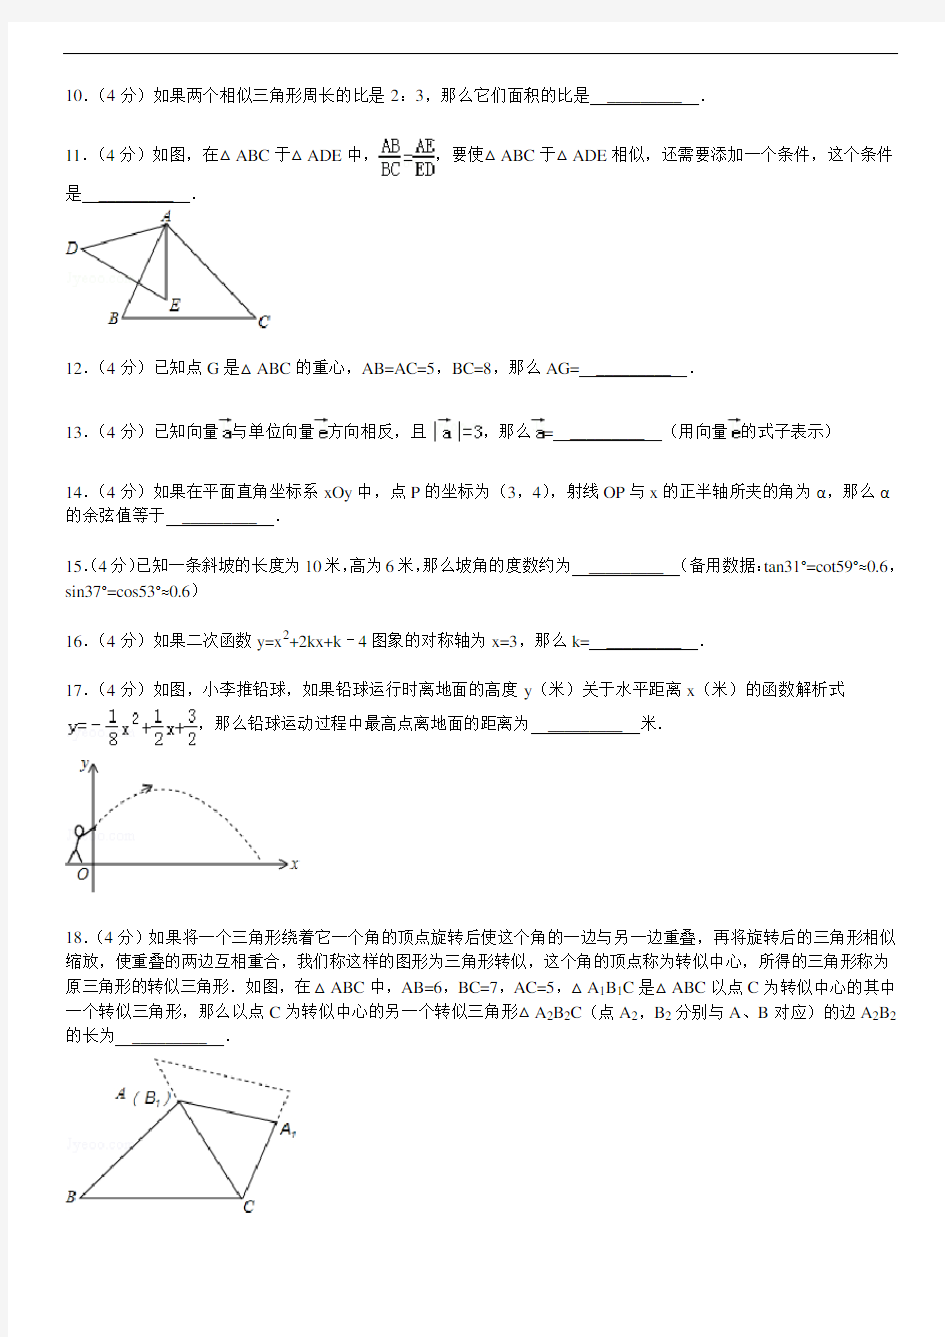 2014年上海市静安区中考数学一模试卷---